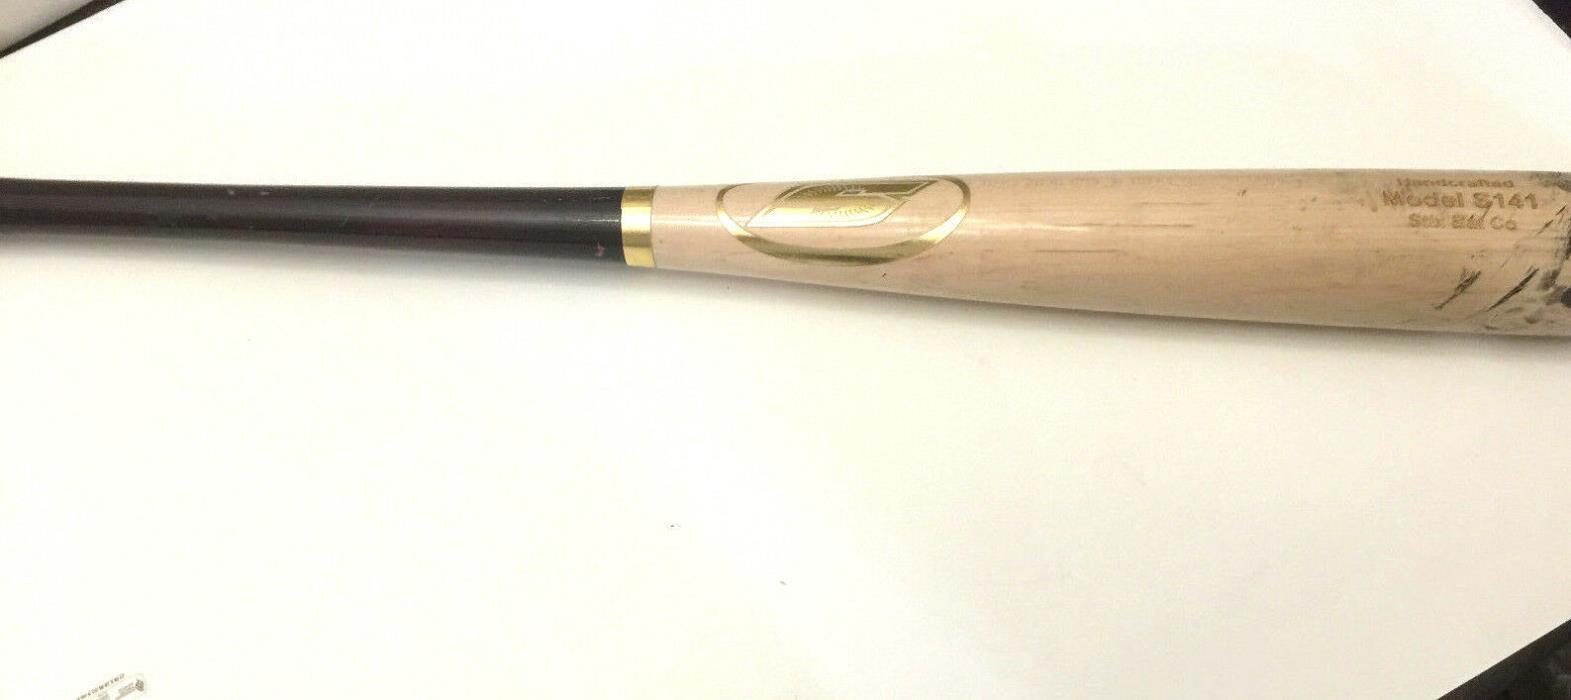 Handcrafted Wooden Stix Bat Model S141 Number 1593